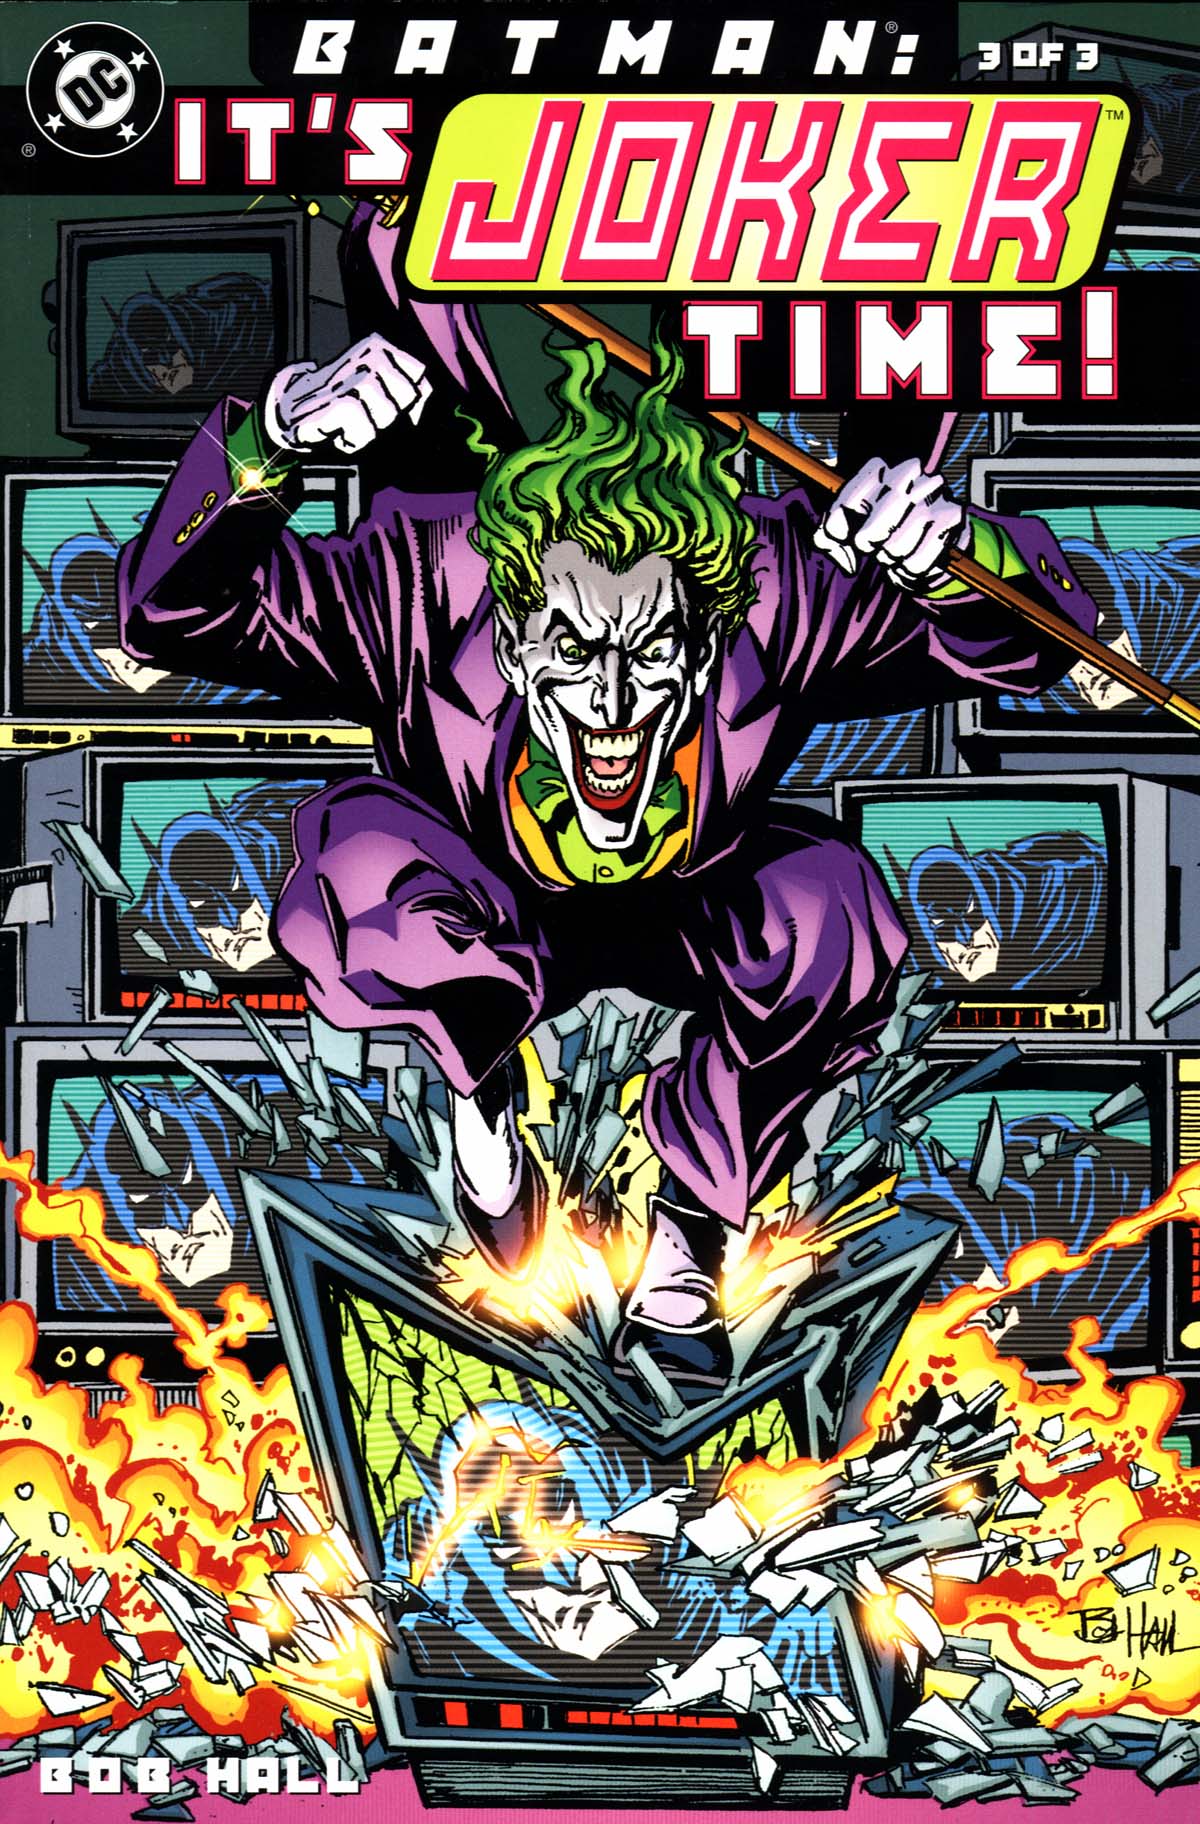 Times encounters. Джокер комиксы девяностых. Комиксы 2000 годов. Джокер земля 2.